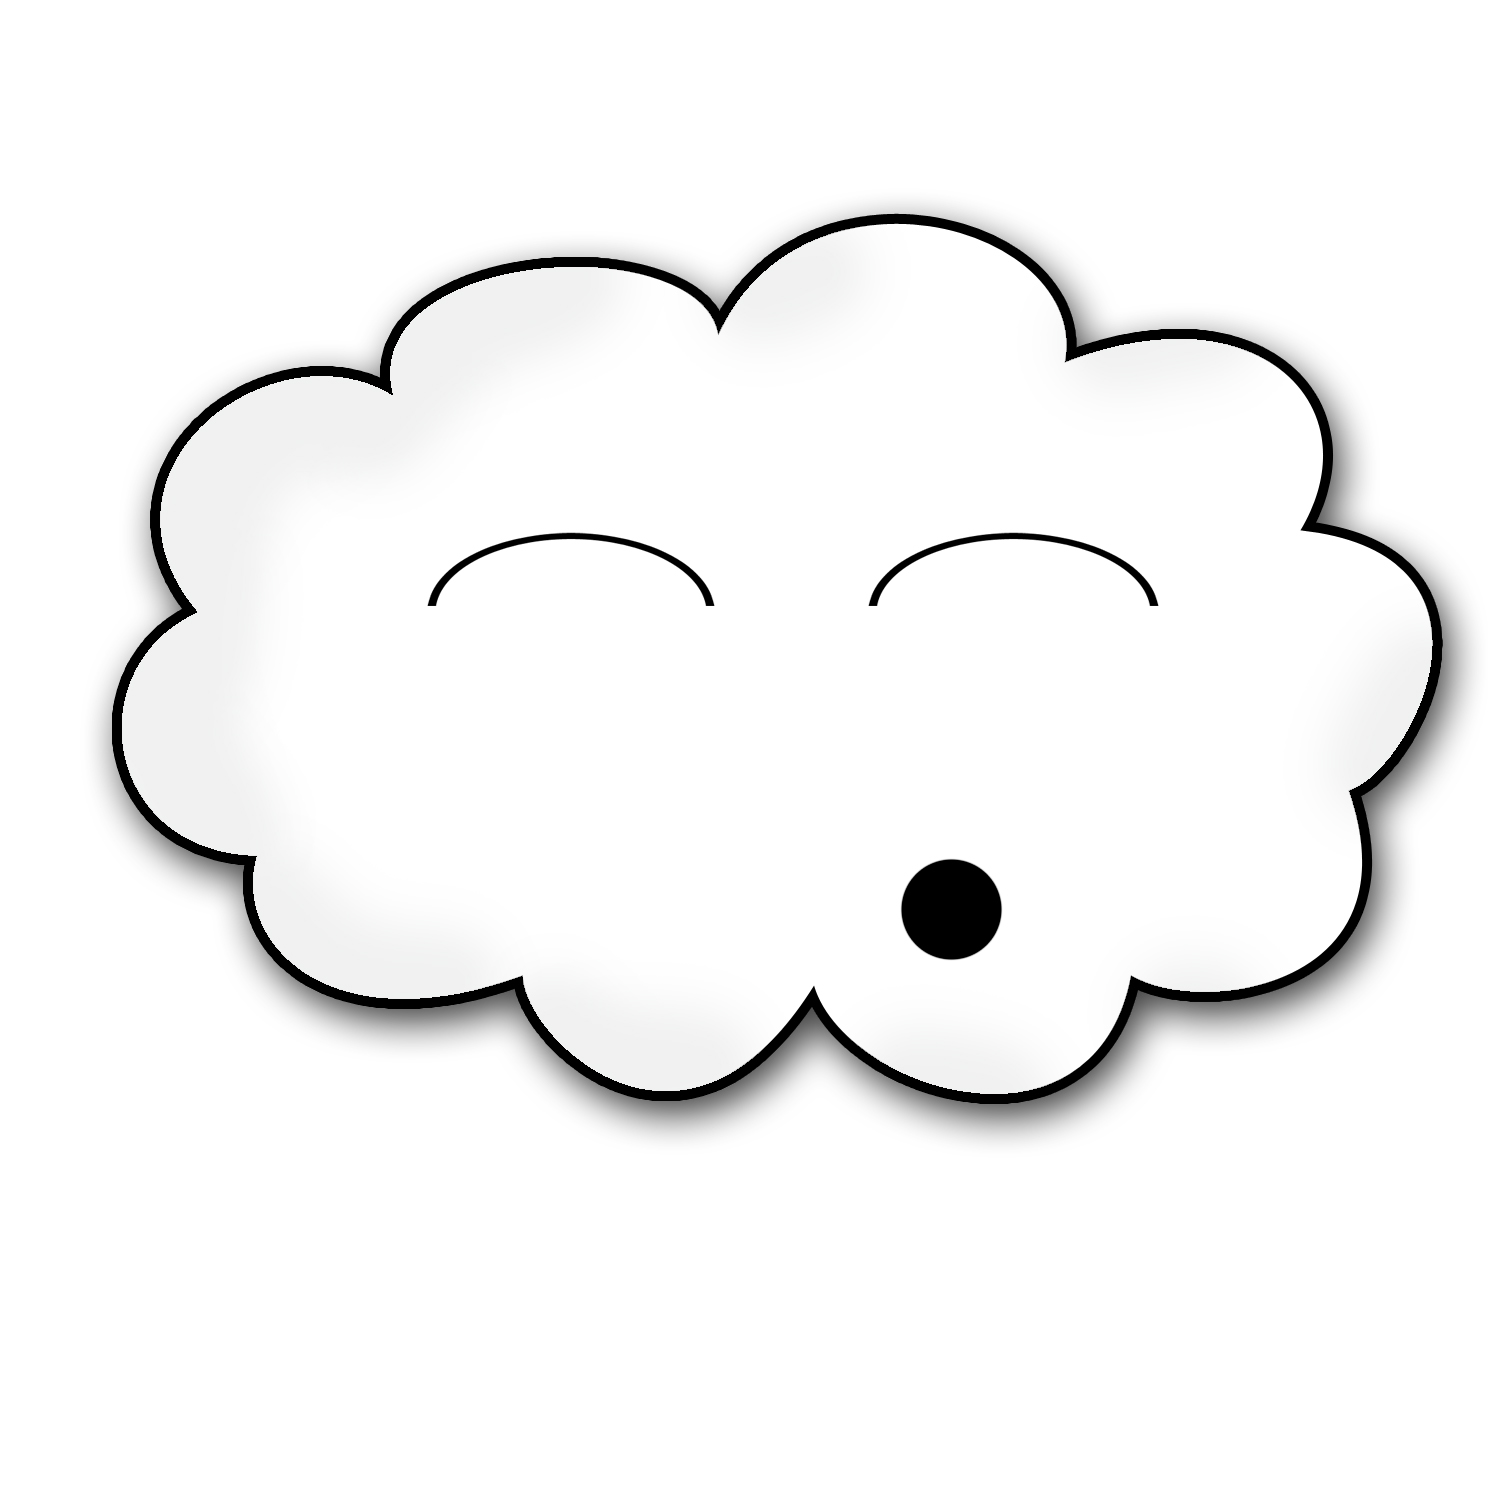 Cloud 3 image - vector clip art online, royalty free & public domain